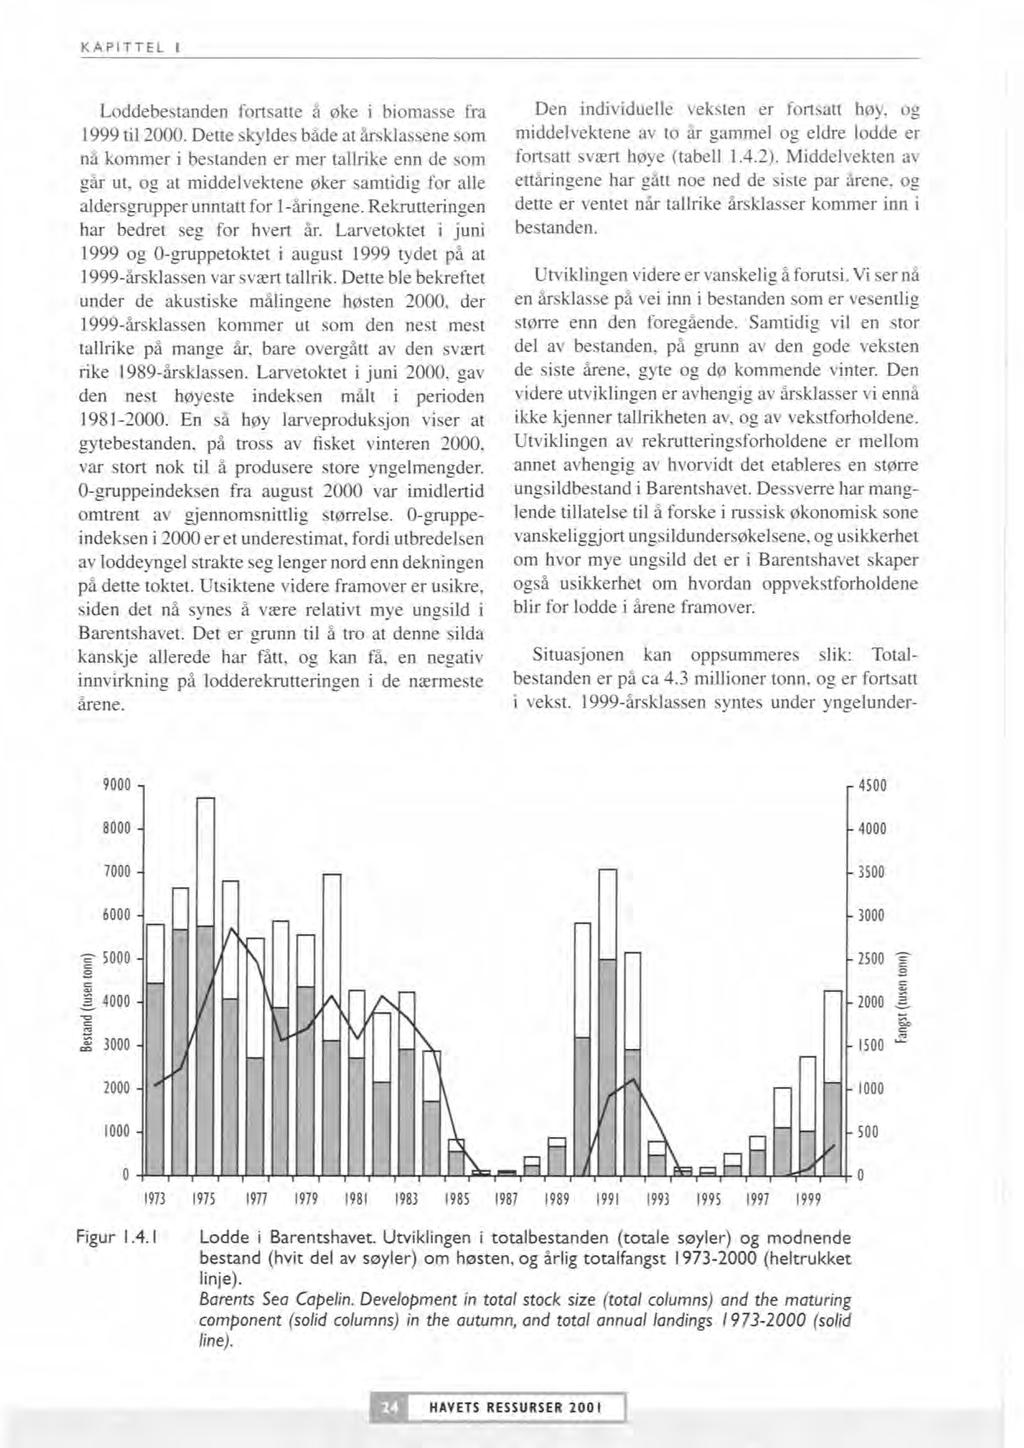 KAPITTEL I Loddebestanden fortsatte Øke i biomasse fr;i Den individuelle veksten er fortsatt høy, og 1999 til 2000.